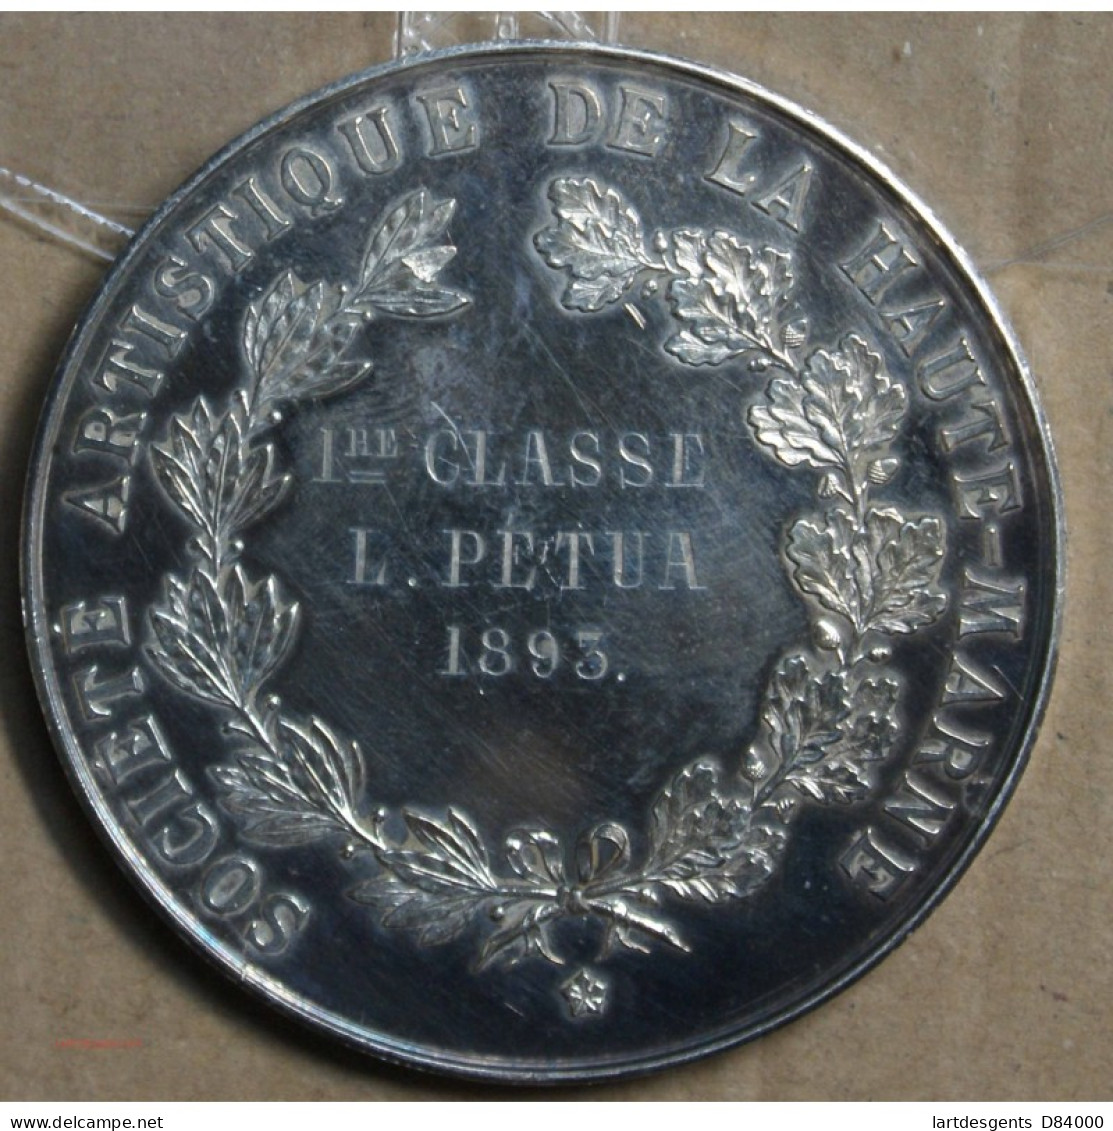 Médaille Argent "Société Artistique De La Haute Marne" Attribué à Pétua 1893 (22), Lartdesgents.fr - Royal / Of Nobility